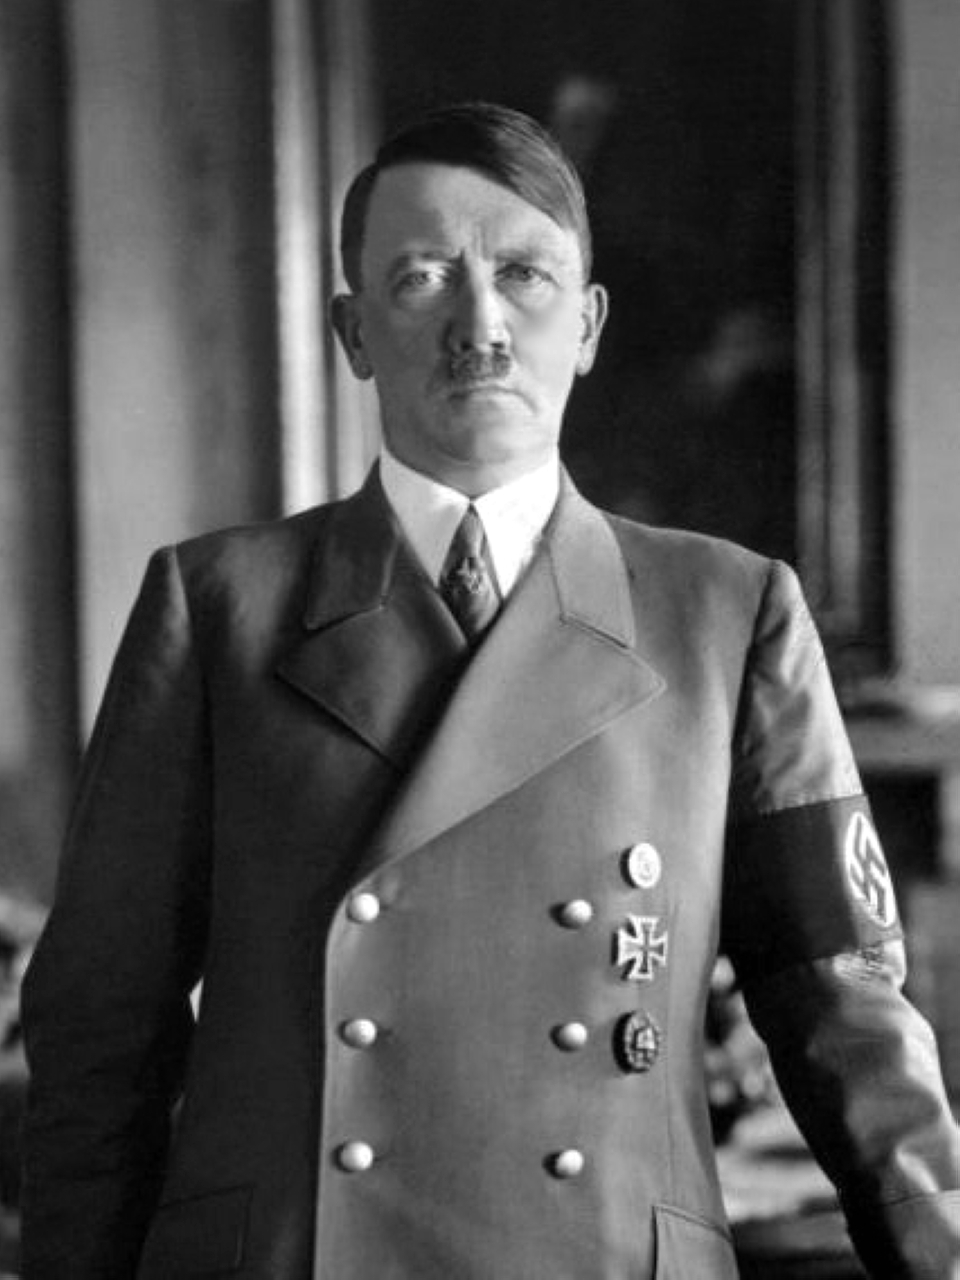 الصورة : 1942 الزعيم النازي أدولف هتلر يتراجع عن فكرة غزو بريطانيا المعروفة بخطة «أسد البحر».